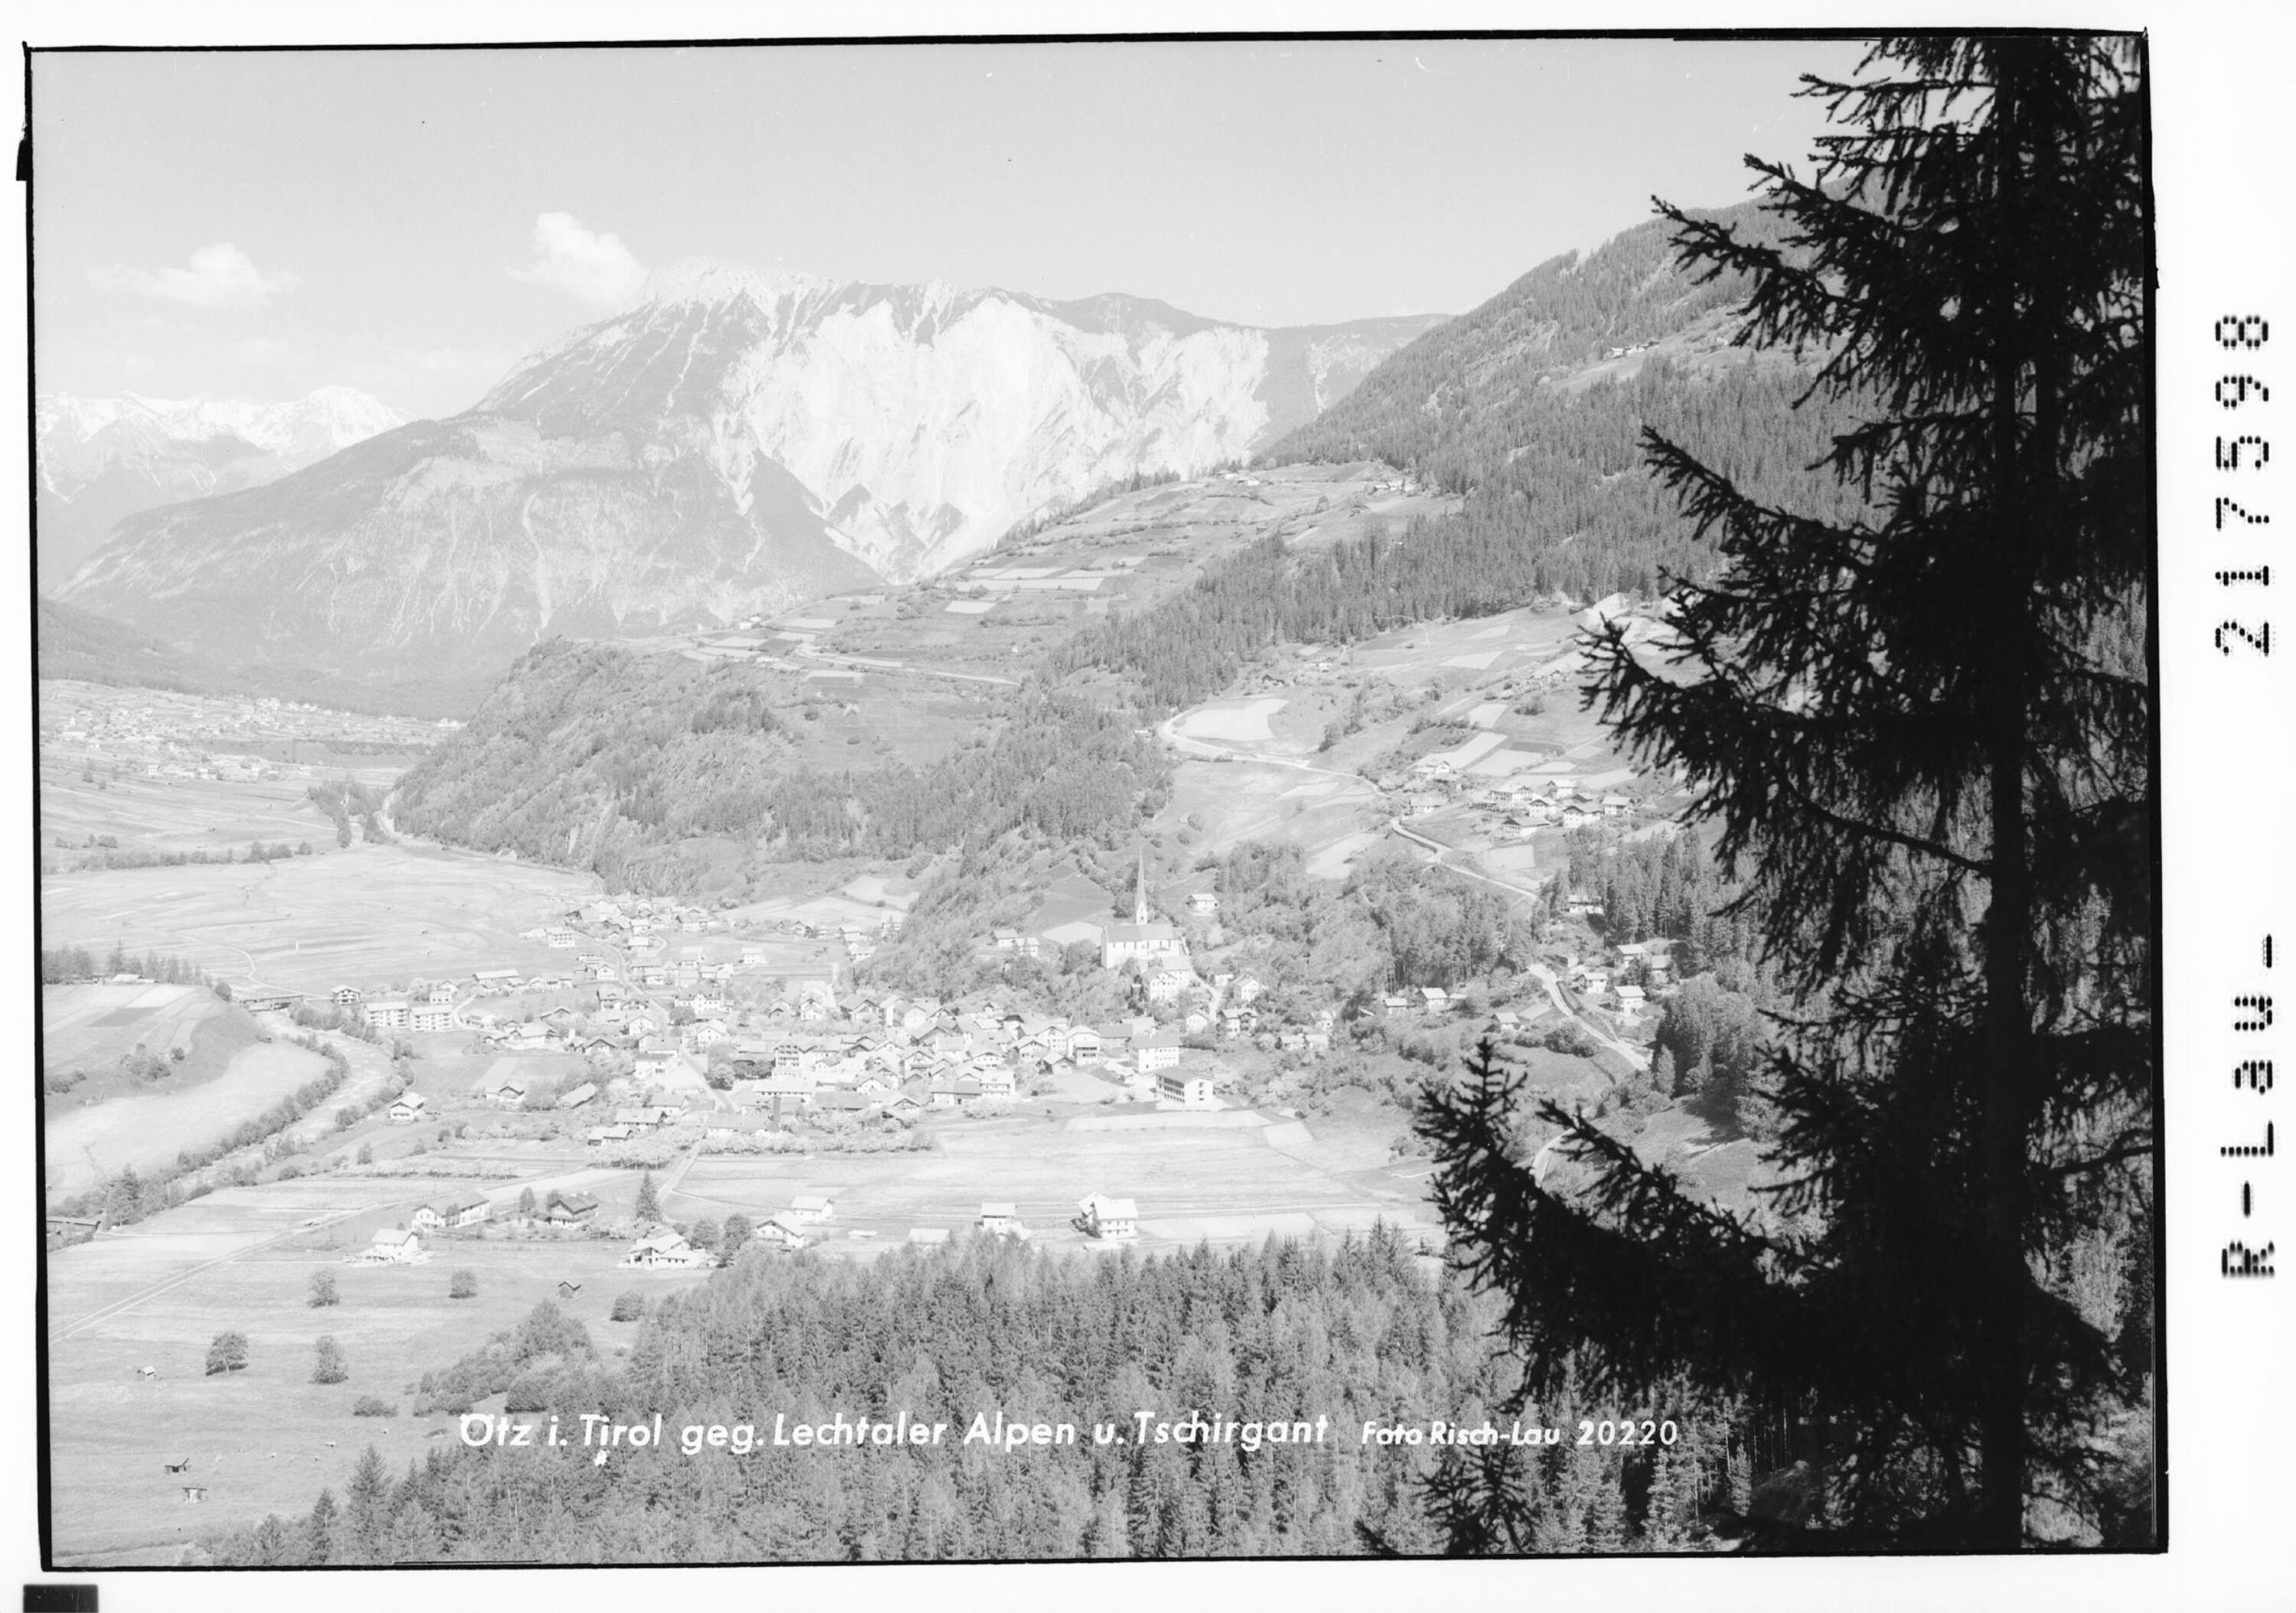 Ötz in Tirol gegen Lechtaler Alpen und Tschirgant></div>


    <hr>
    <div class=